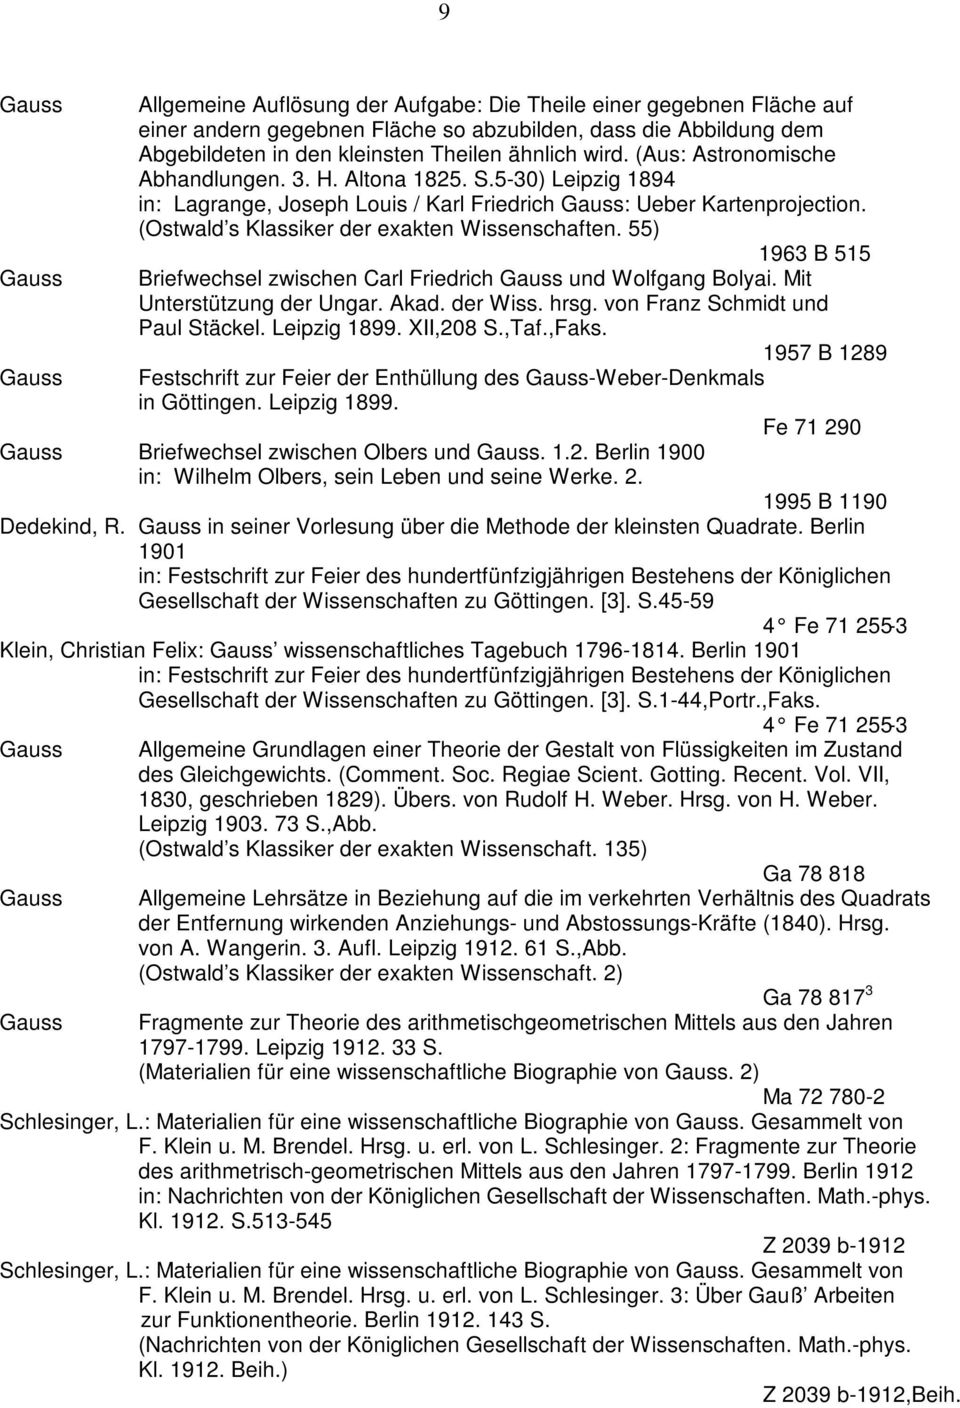 55) 1963 B 515 Briefwechsel zwischen Carl Friedrich und Wolfgang Bolyai. Mit Unterstützung der Ungar. Akad. der Wiss. hrsg. von Franz Schmidt und Paul Stäckel. Leipzig 1899. XII,208 S.,Taf.,Faks.